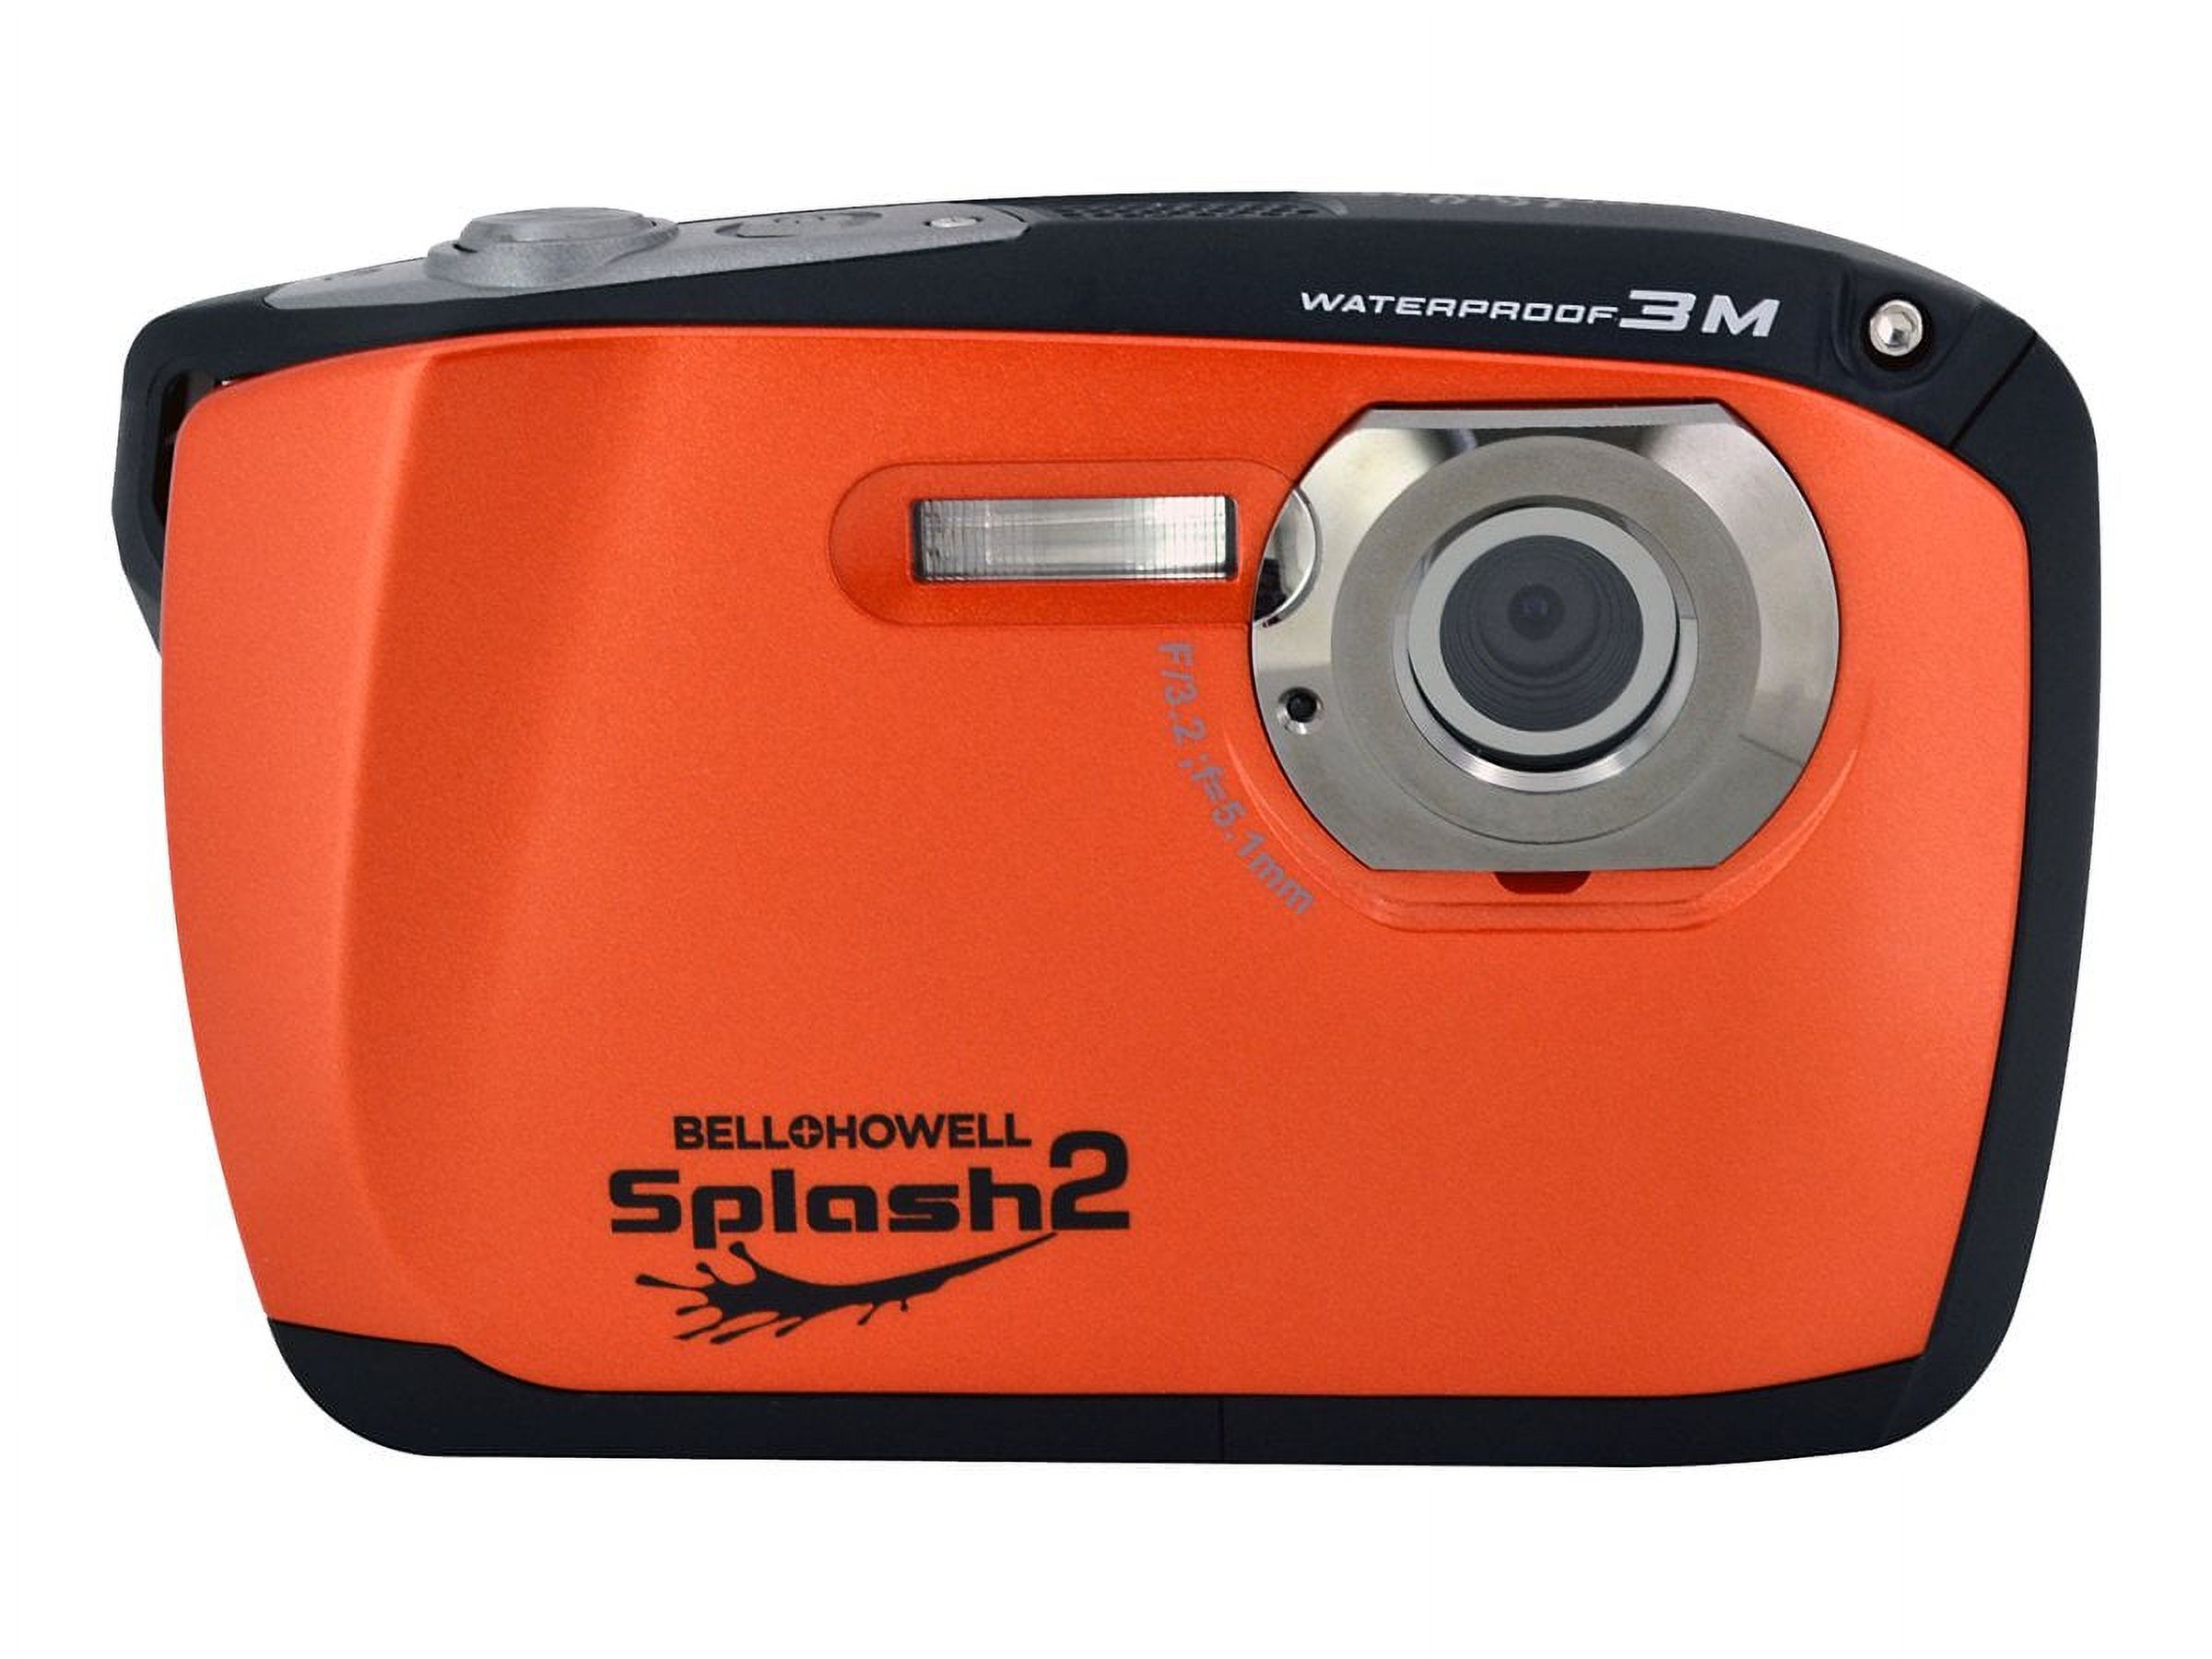 Bell+Howell Orange Splash2 WP16 Digital Camera with 16 Megapixels and 4x Digital Zoom - image 2 of 3